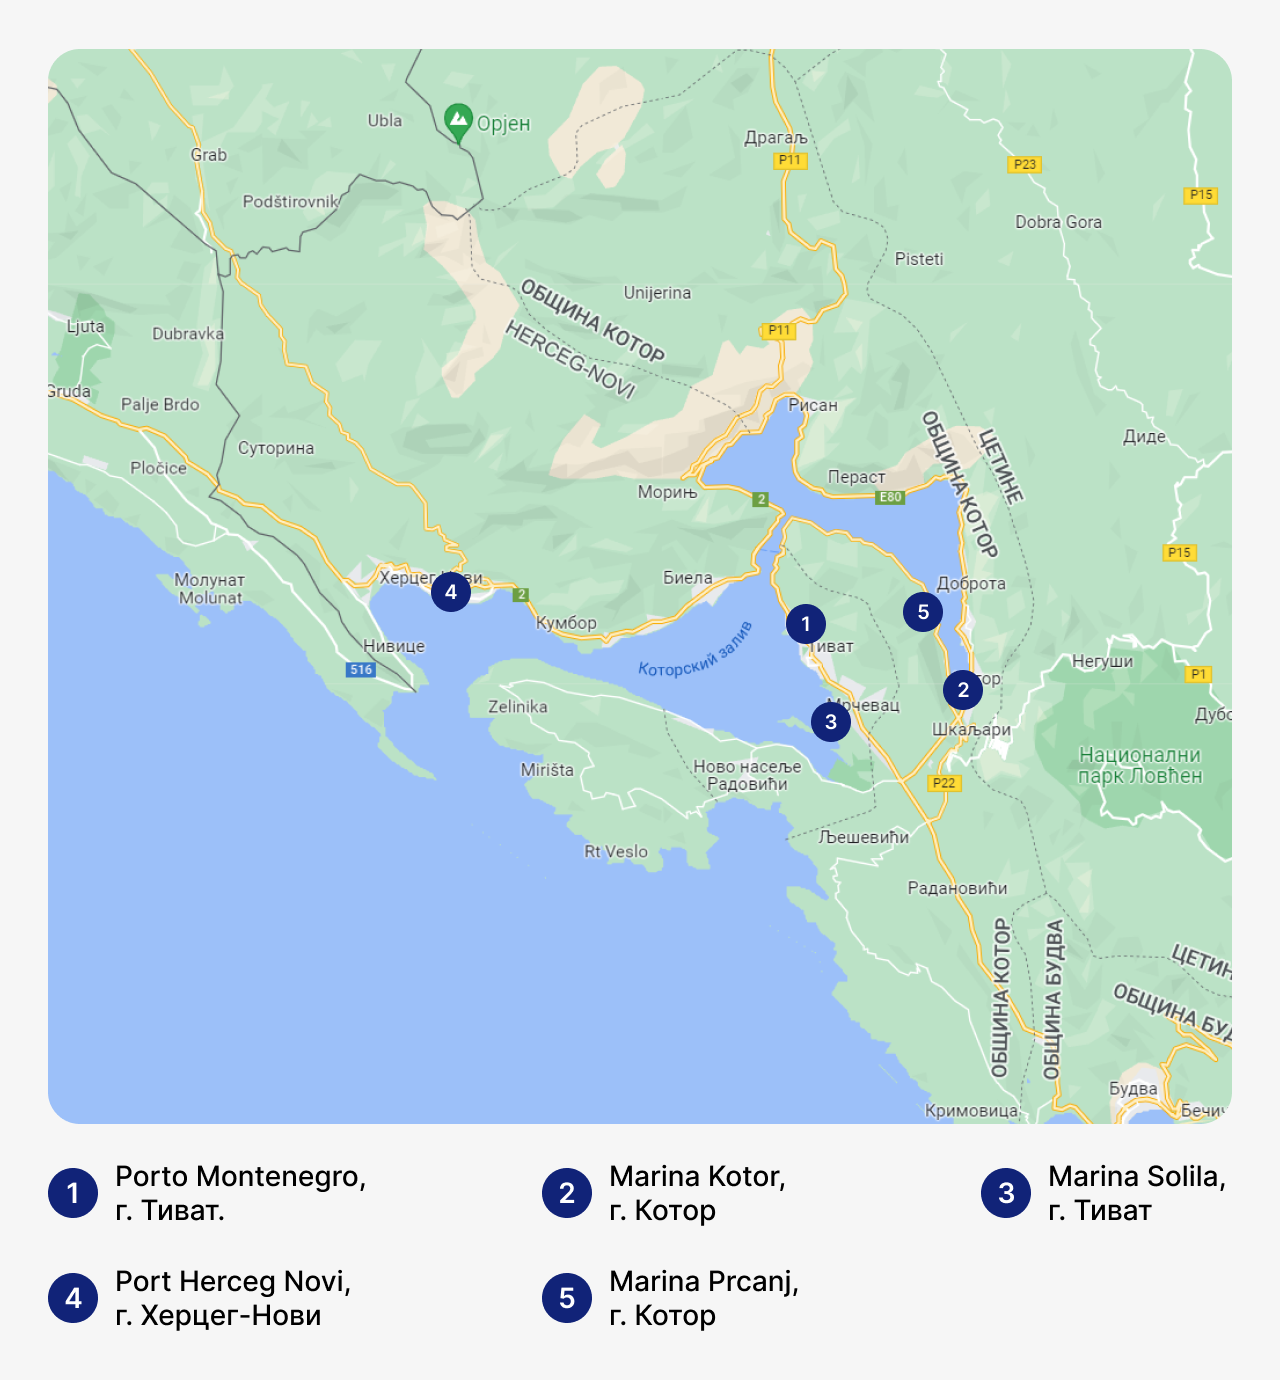 Лучшие марины в Черногории, карта Черногории с маринами, стоянка для яхт в Черногории, где хранить яхты в Черногории